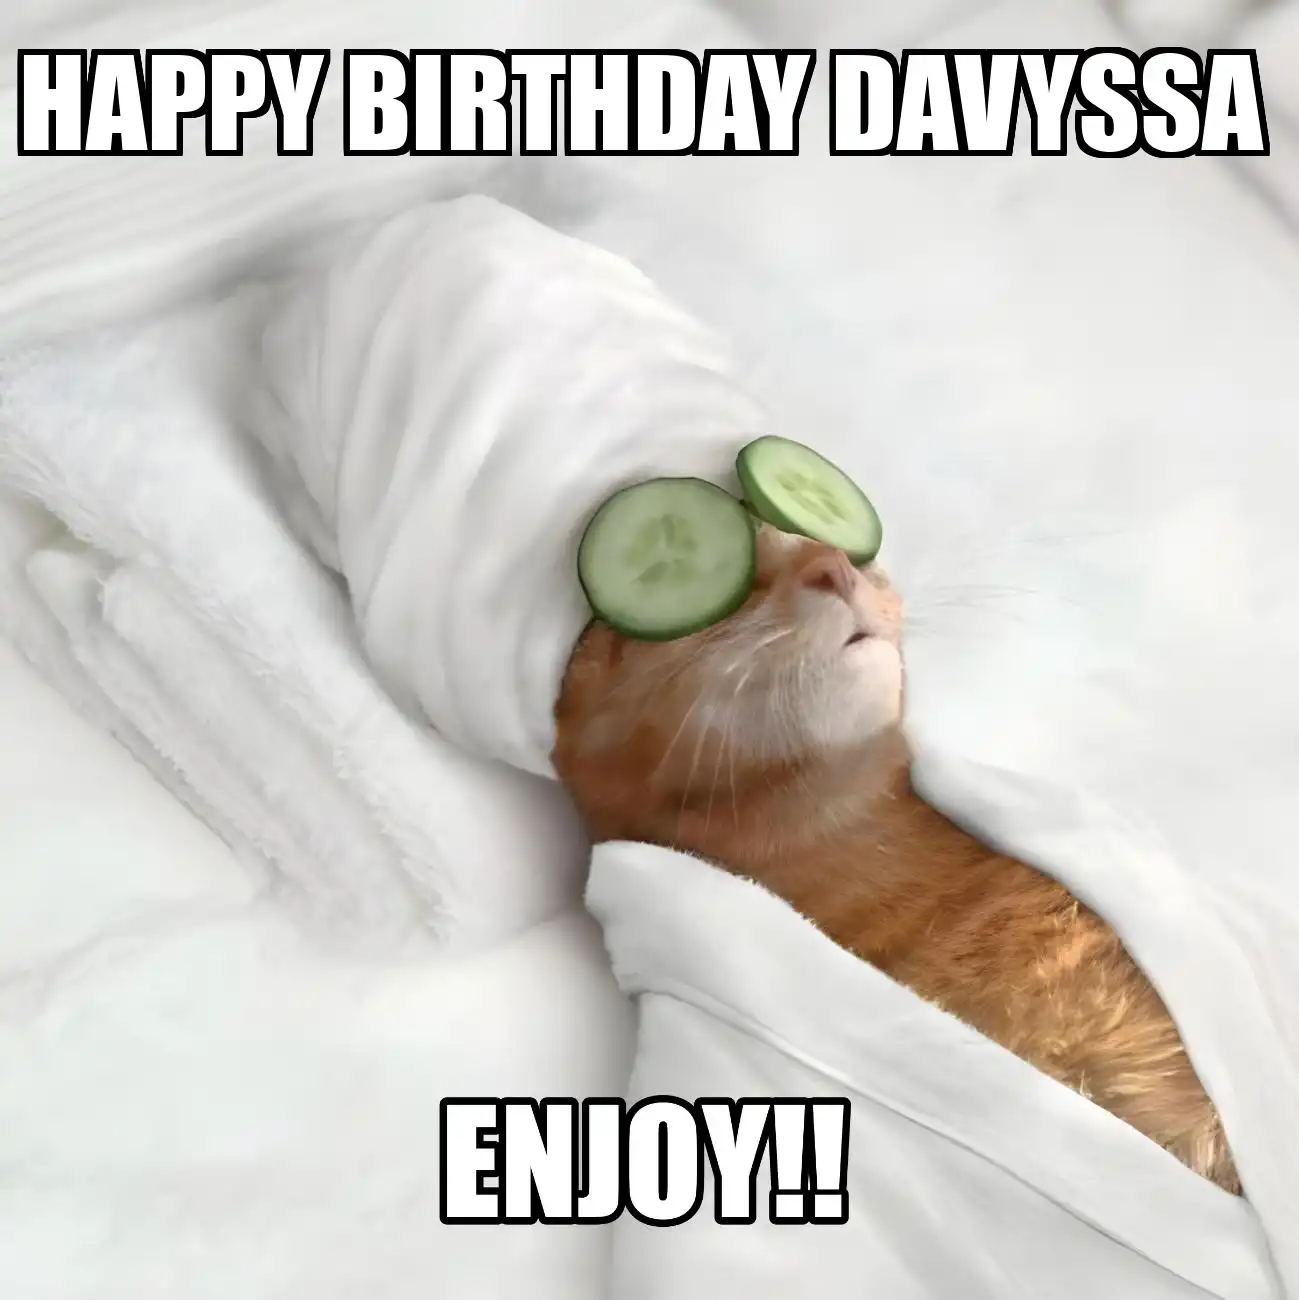 Happy Birthday Davyssa Enjoy Cat Meme